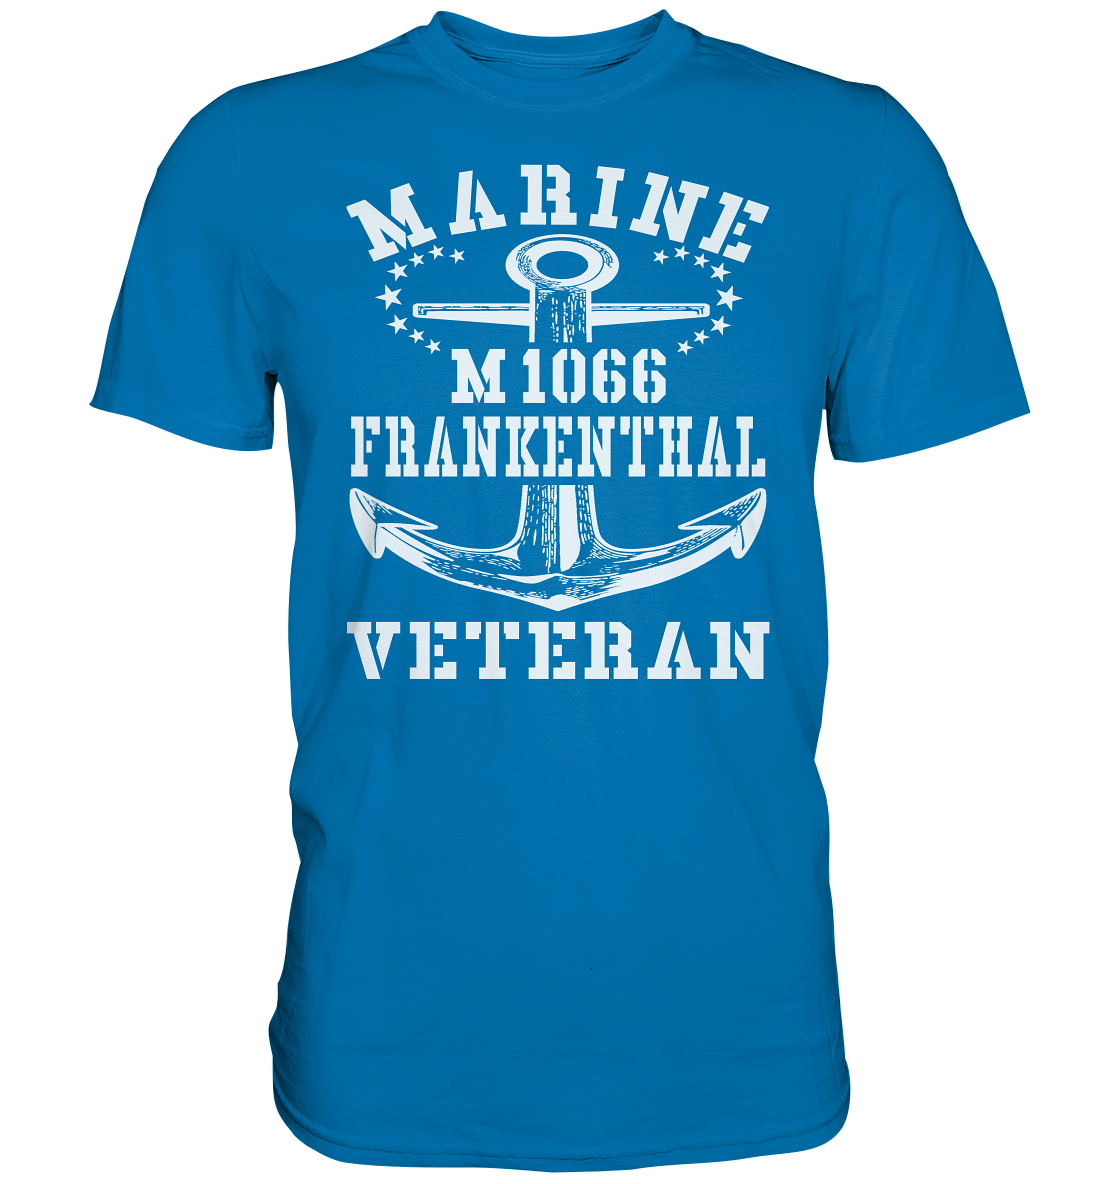 Mij.-Boot M1066 FRANKENTHAL Marine Veteran - Premium Shirt